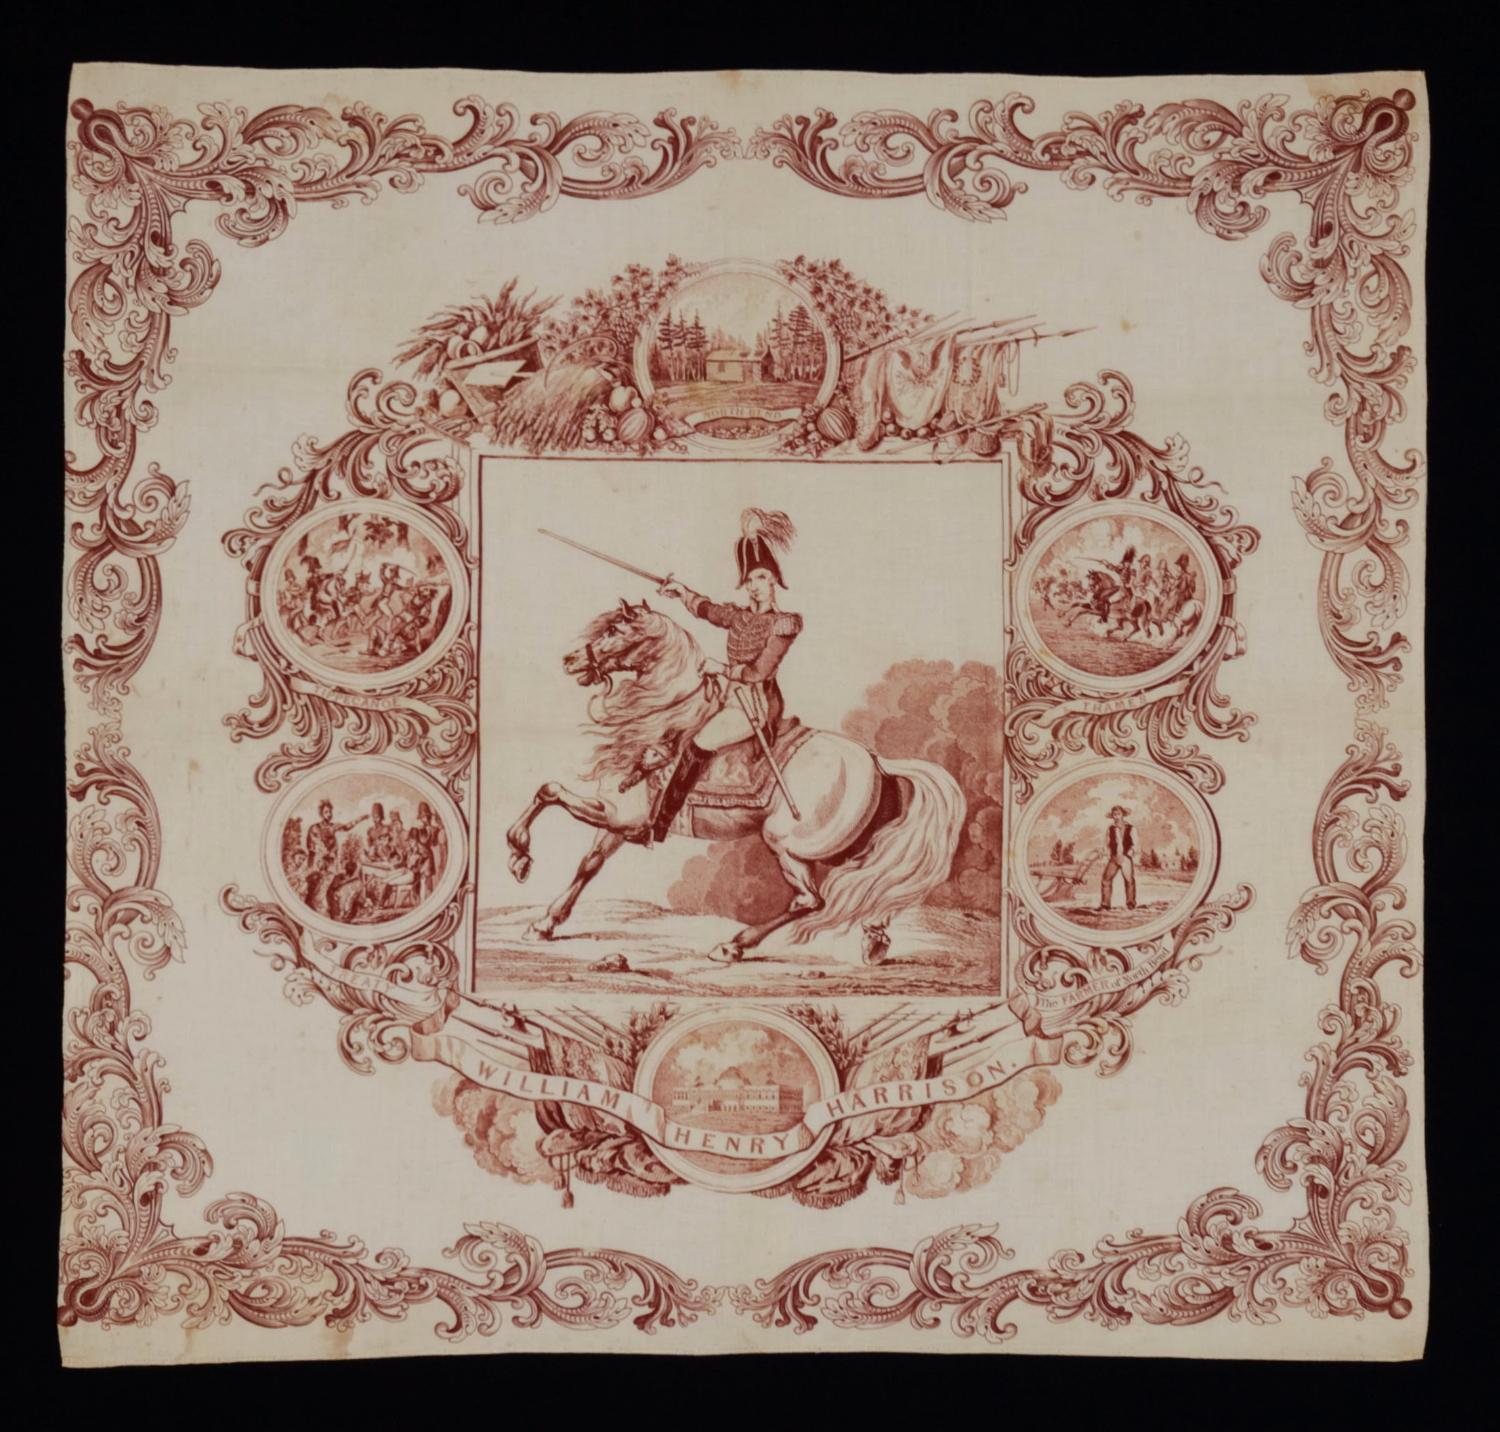 foulard de campagne de 1840 représentant William Henry Harrison à cheval en tenue militaire, l'un des premiers textiles de campagne connus au début de l'Amérique

Imprimé à l'encre rouge mûre sur du coton blanc, l'image centrale de ce foulard